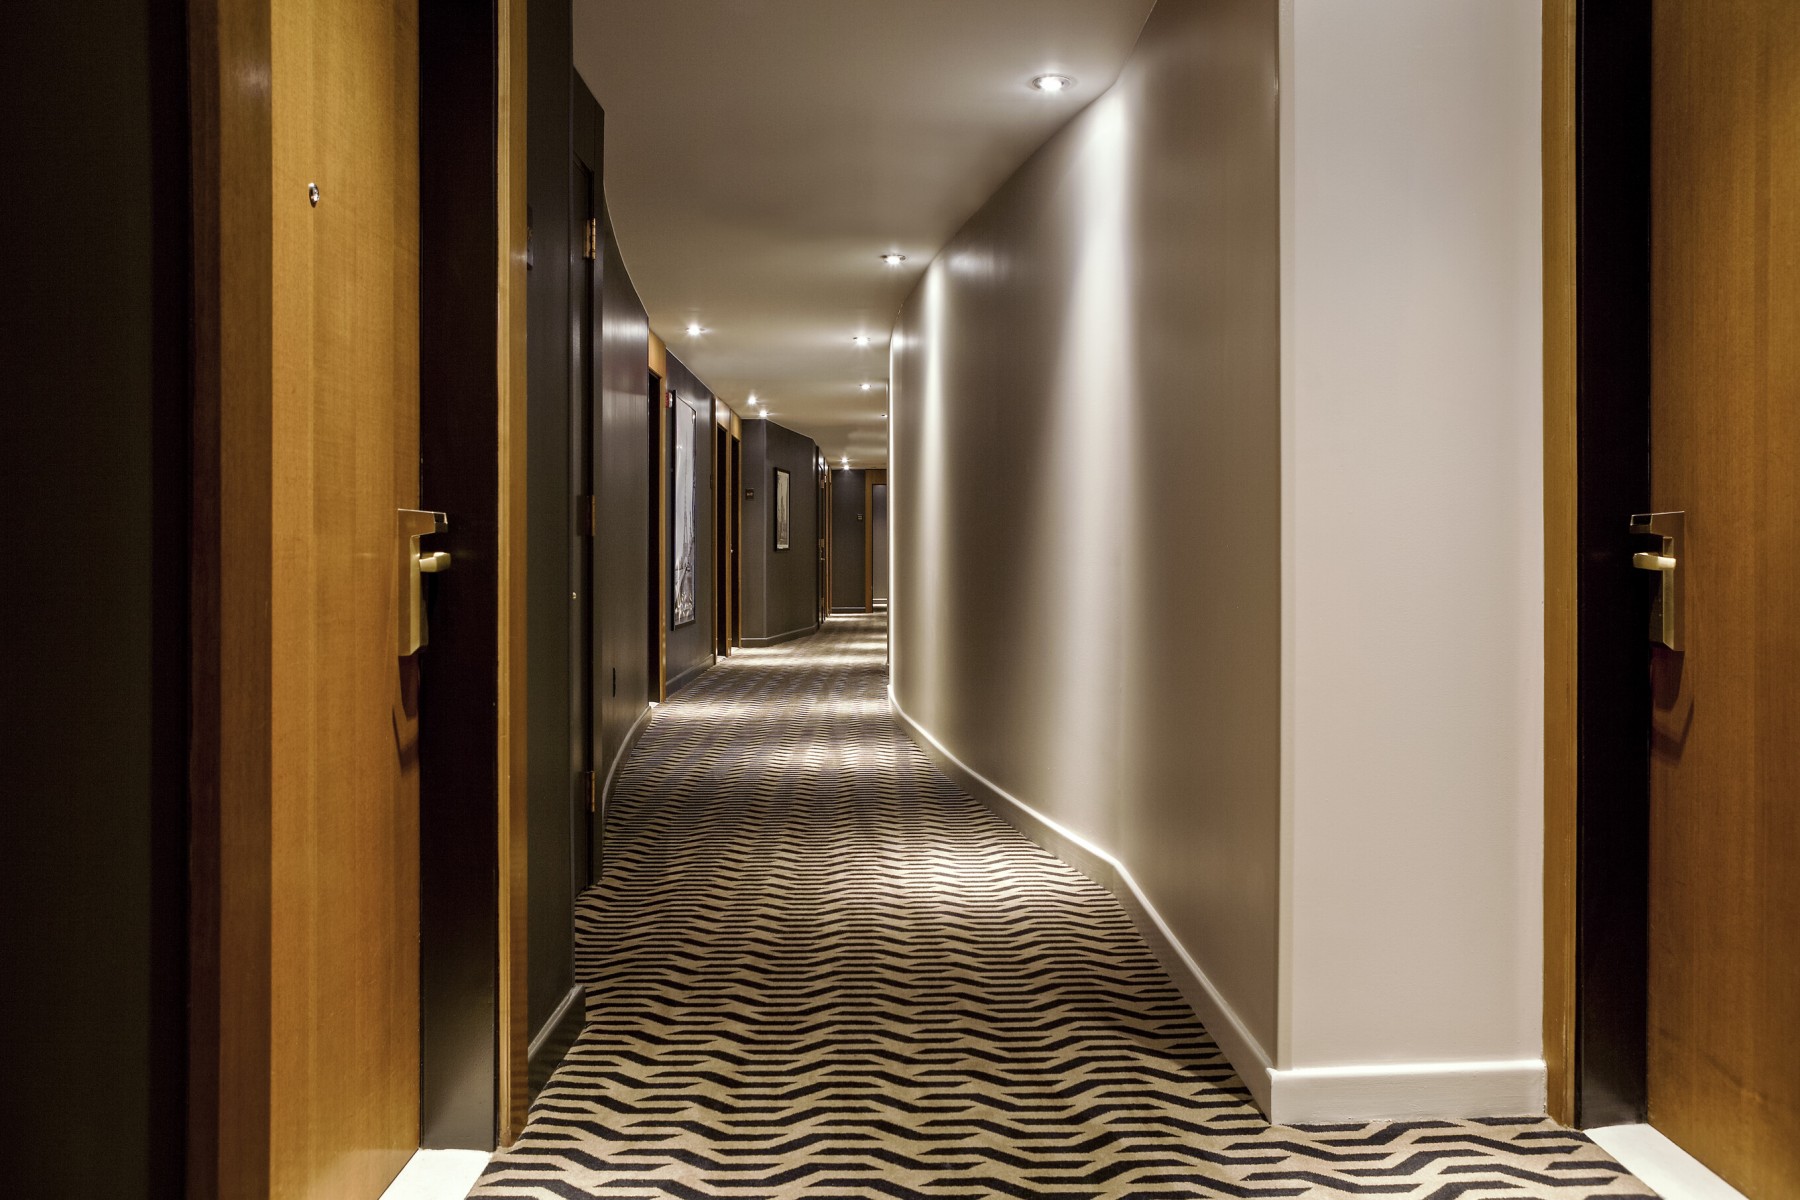 Photo of the hotel Sofitel New York: Hallway corridor